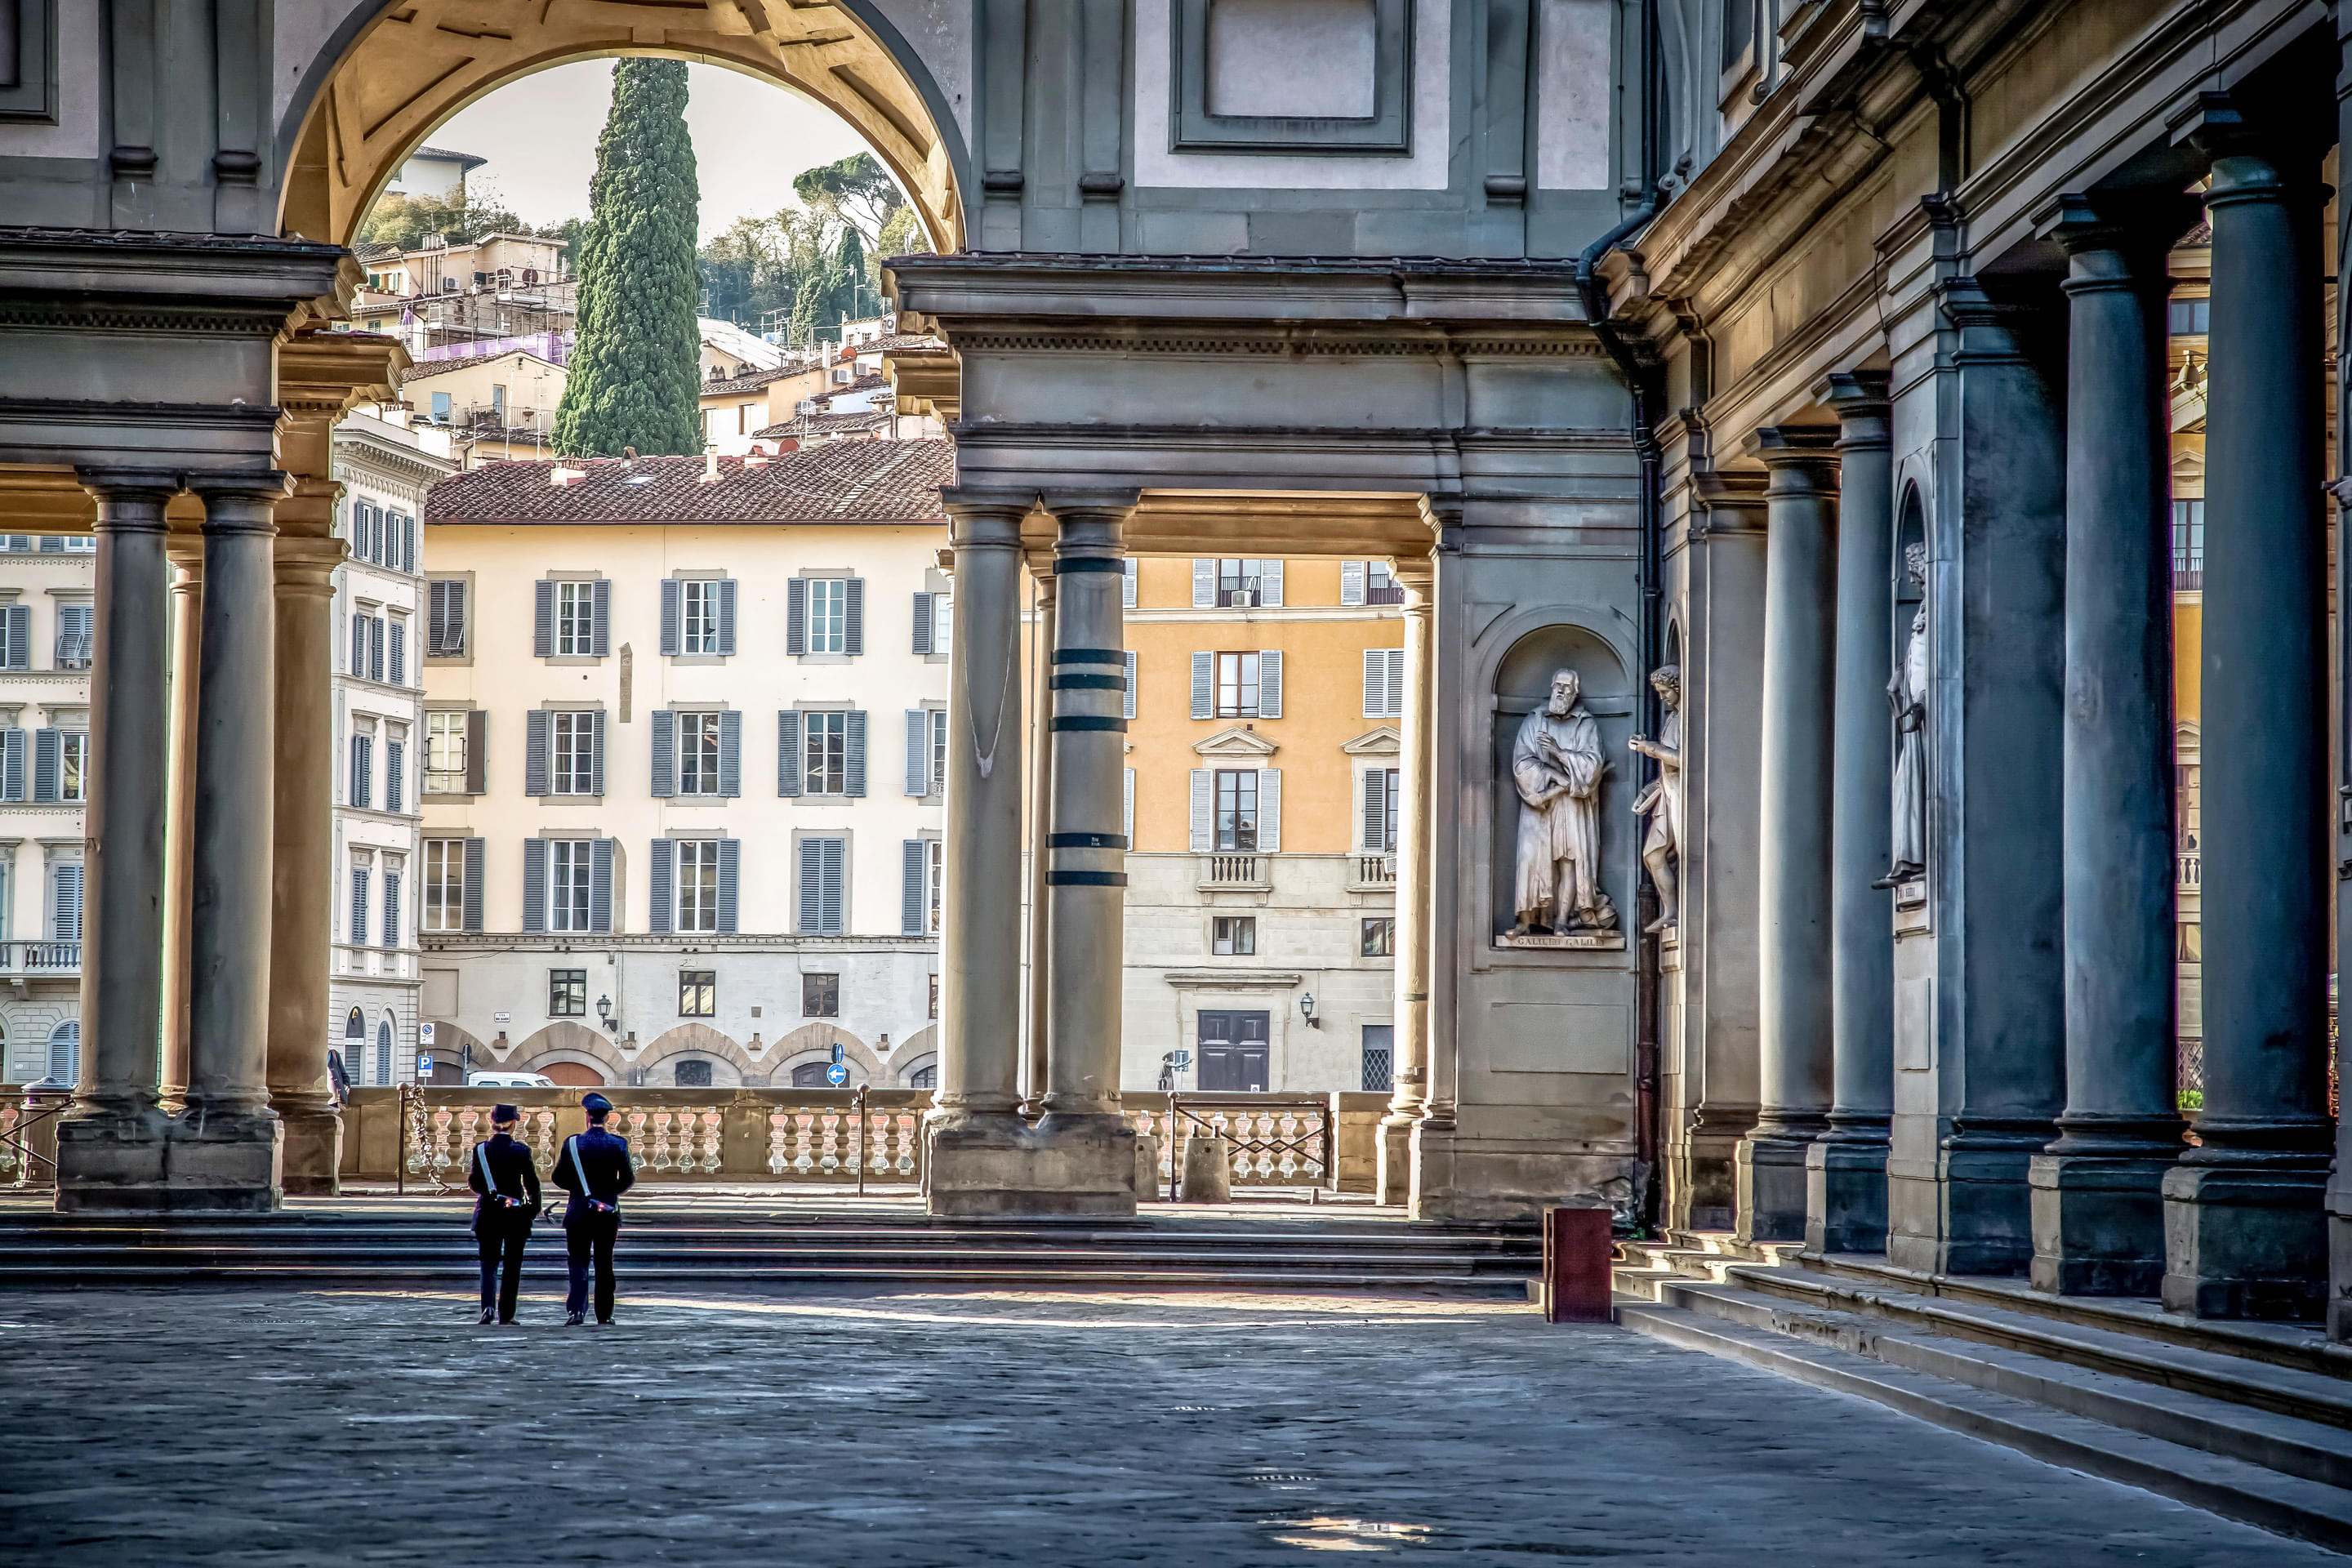 Uffizi Palace And Gallery Overview